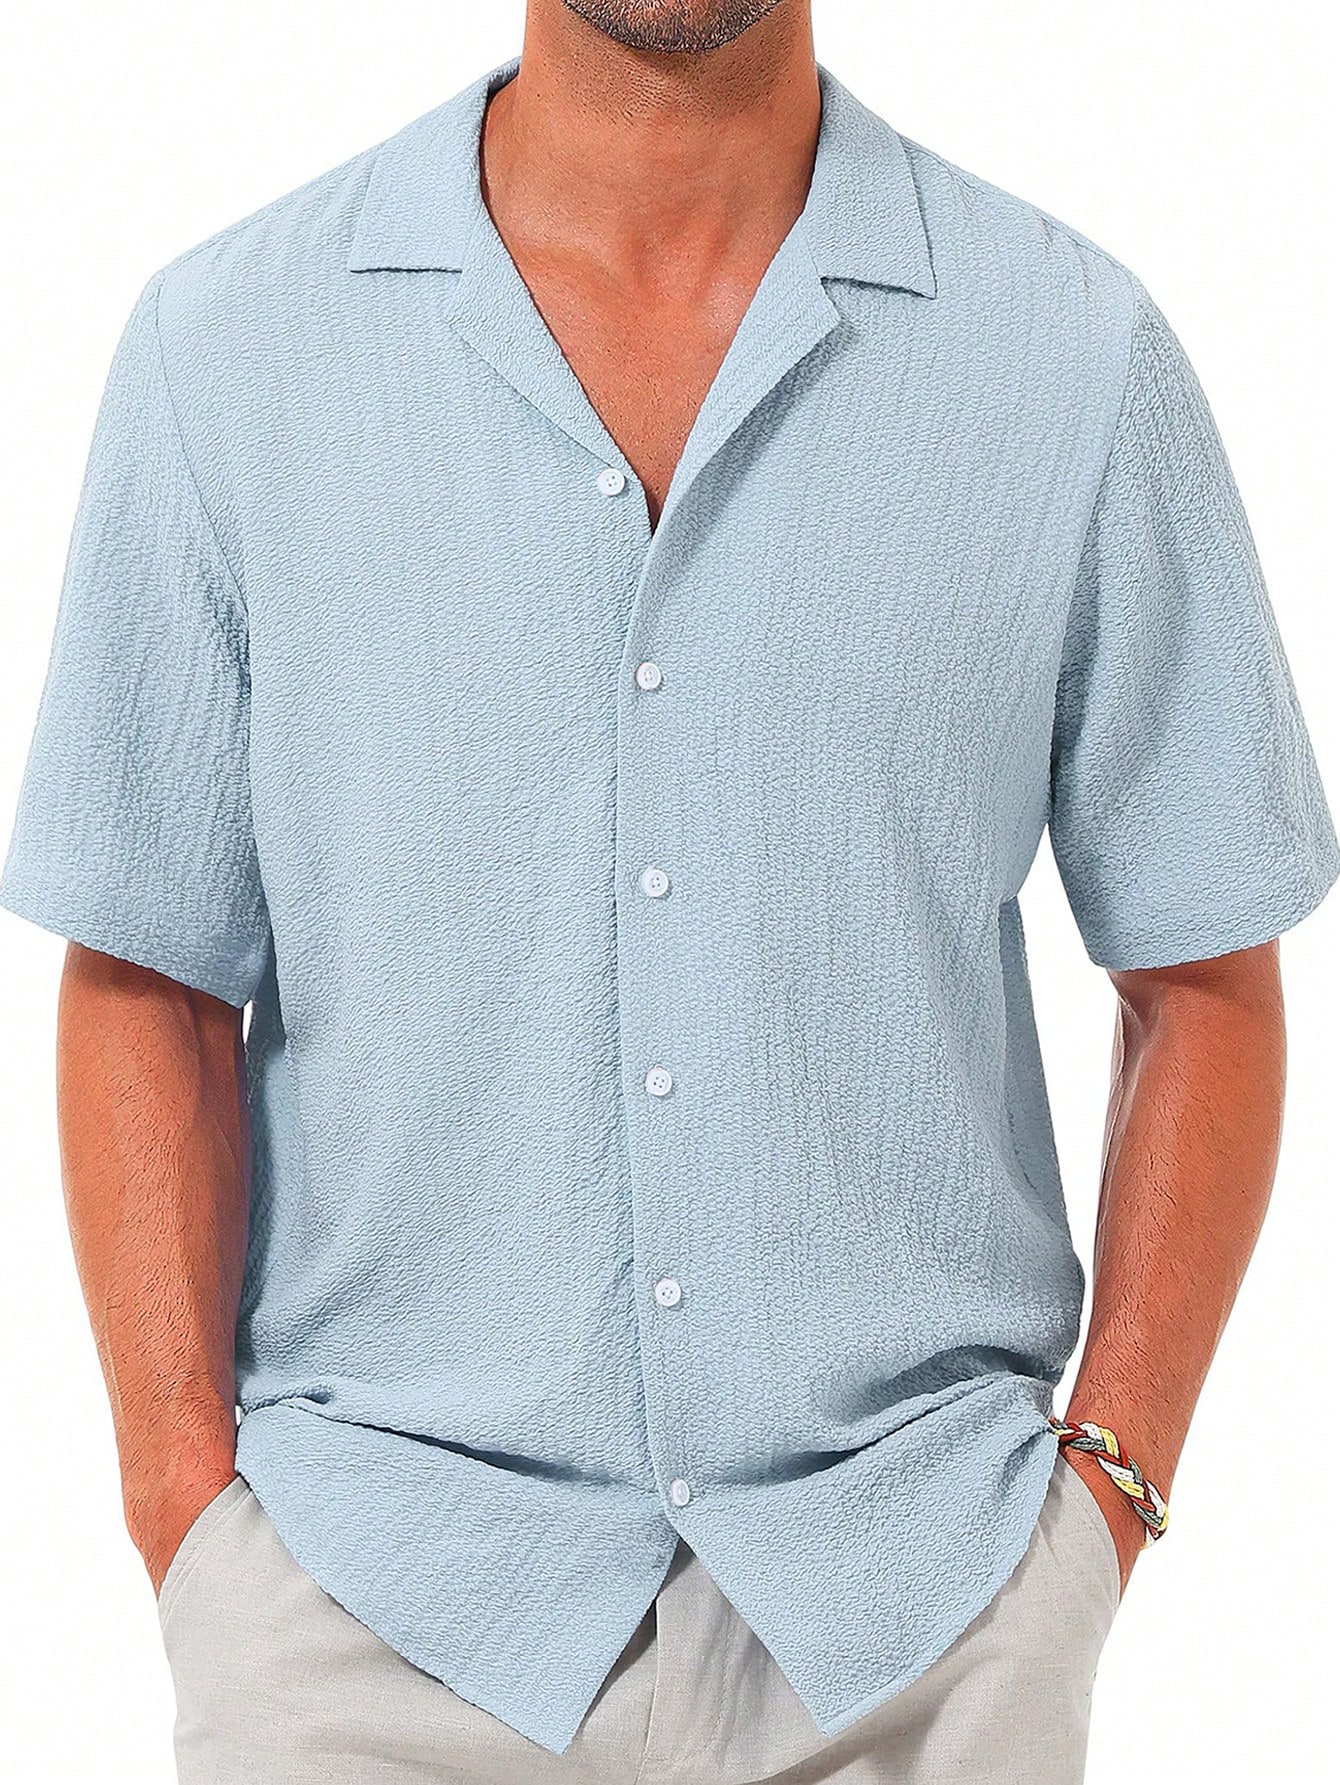 Мужская повседневная рубашка с коротким рукавом на пуговицах, синий рубашка мужская на пуговицах повседневная блуза с коротким рукавом свободного покроя модная сорочка на лето